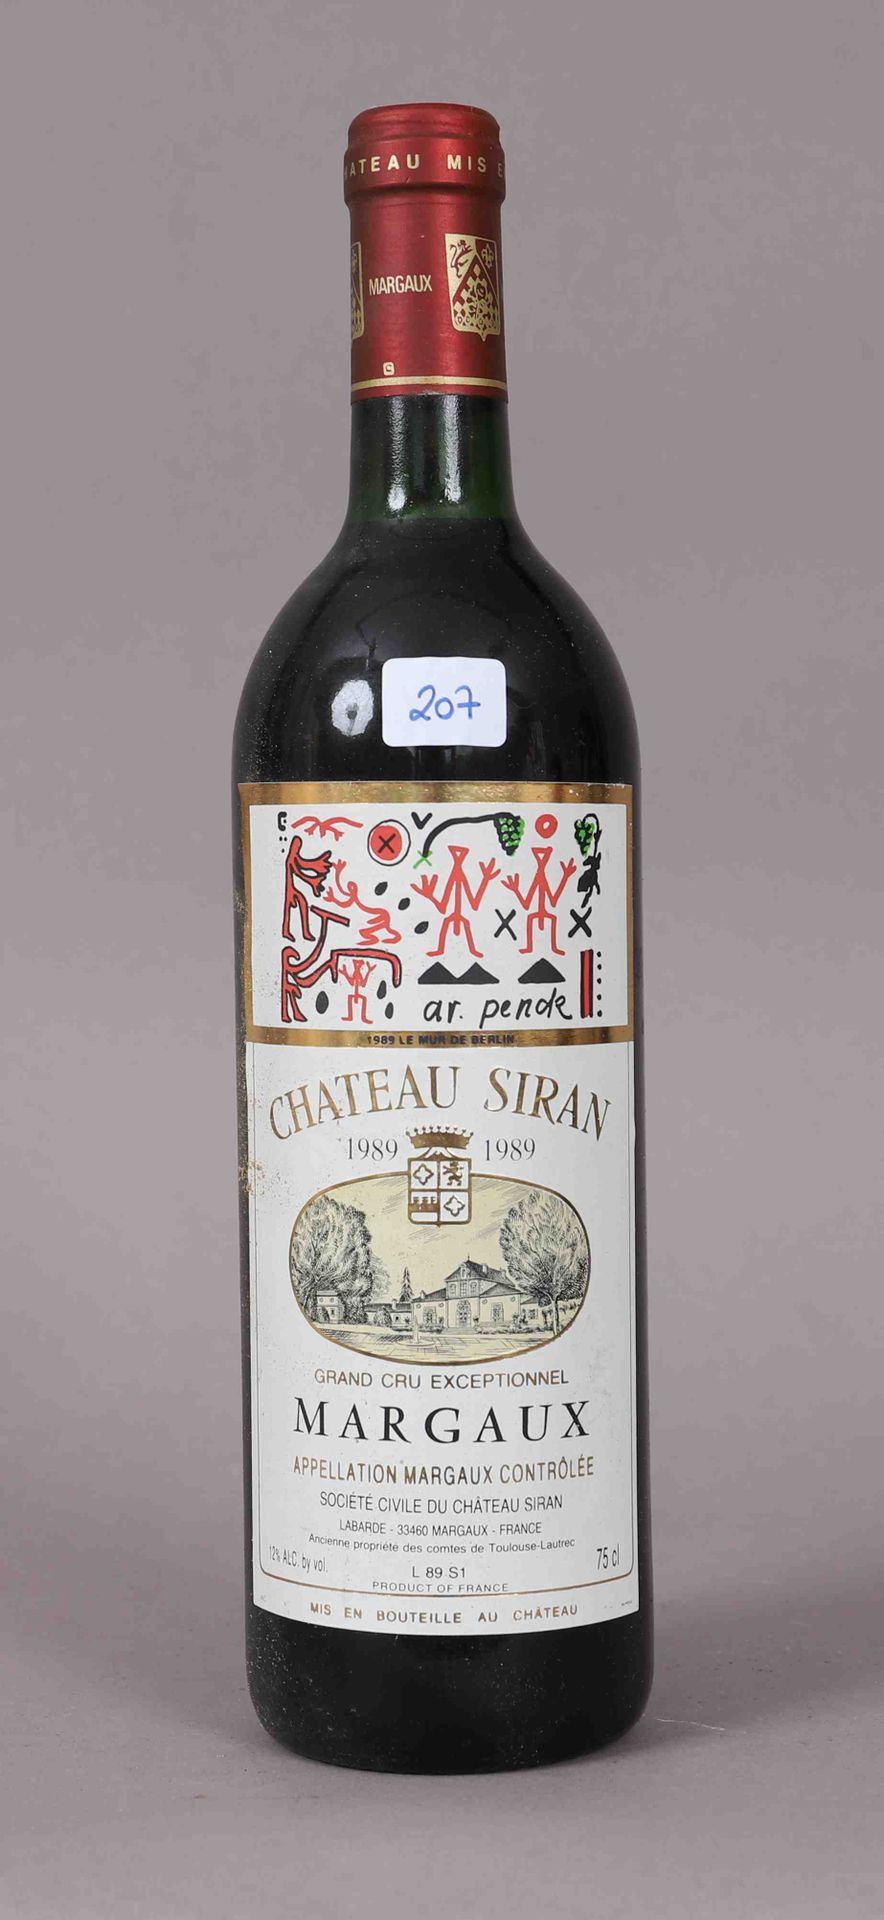 Null Château Siran (x1)

Margaux

1989

0,75L